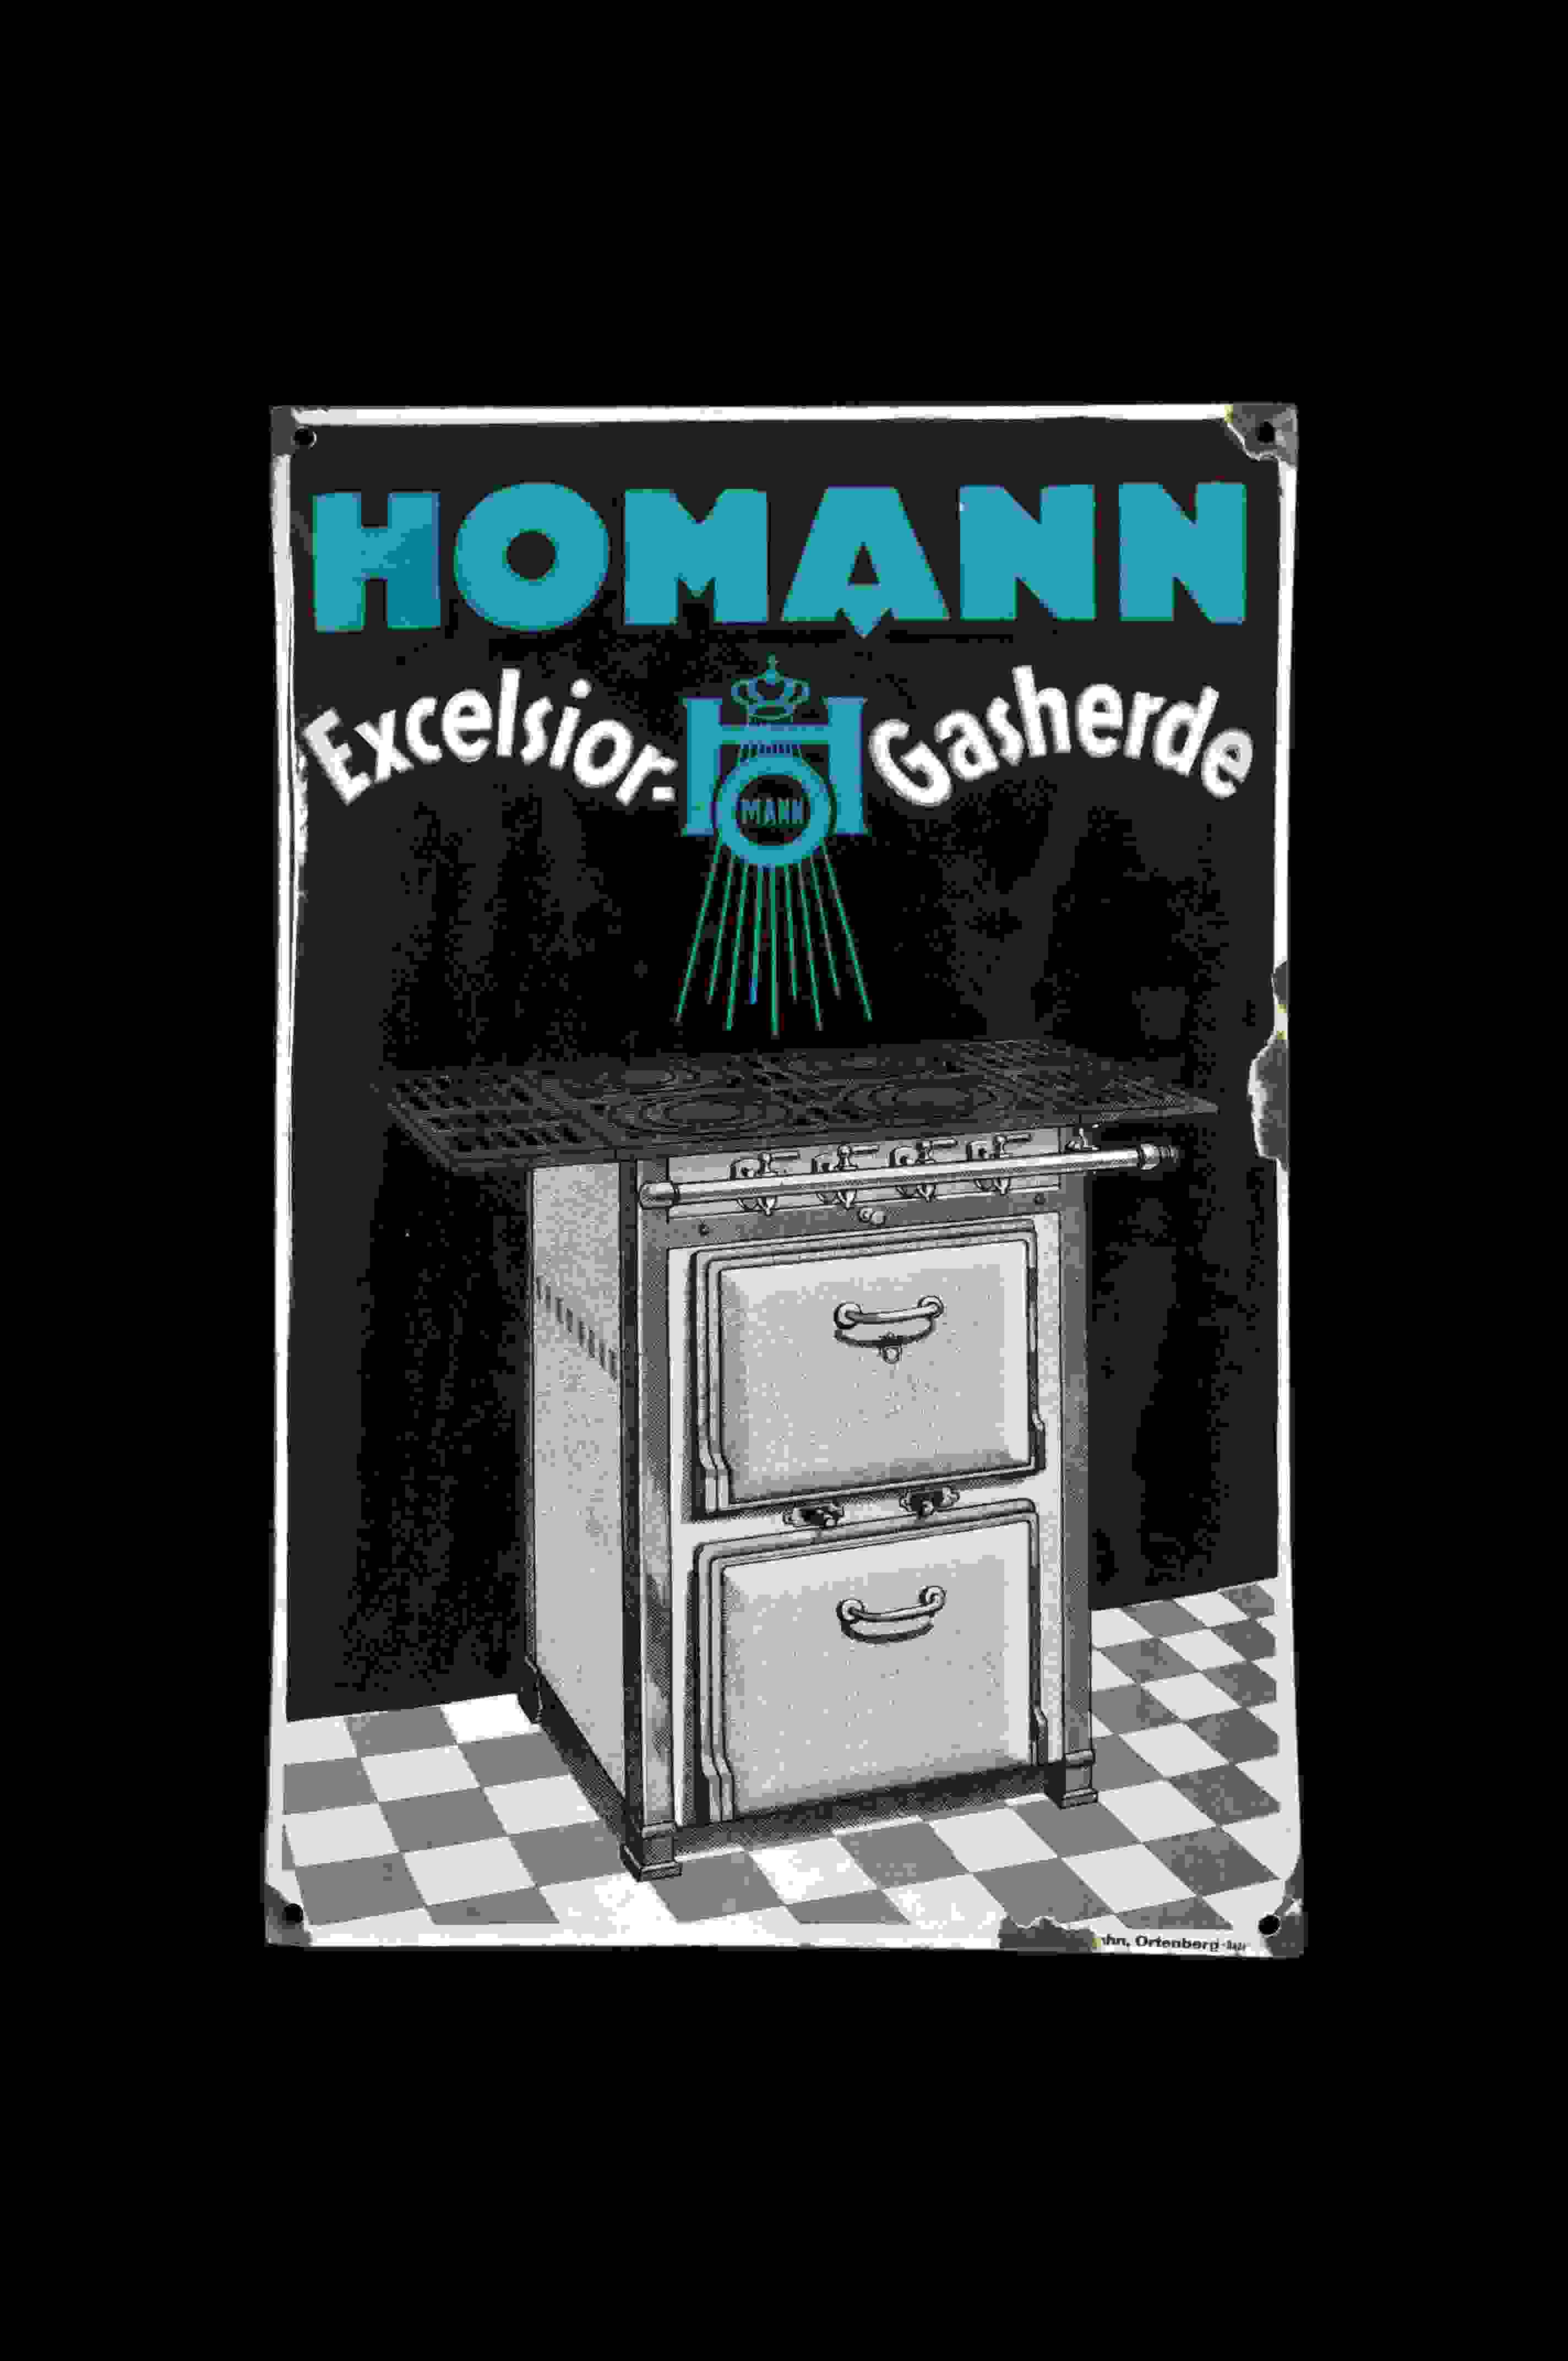 Homann Excelsior-Gasherde 